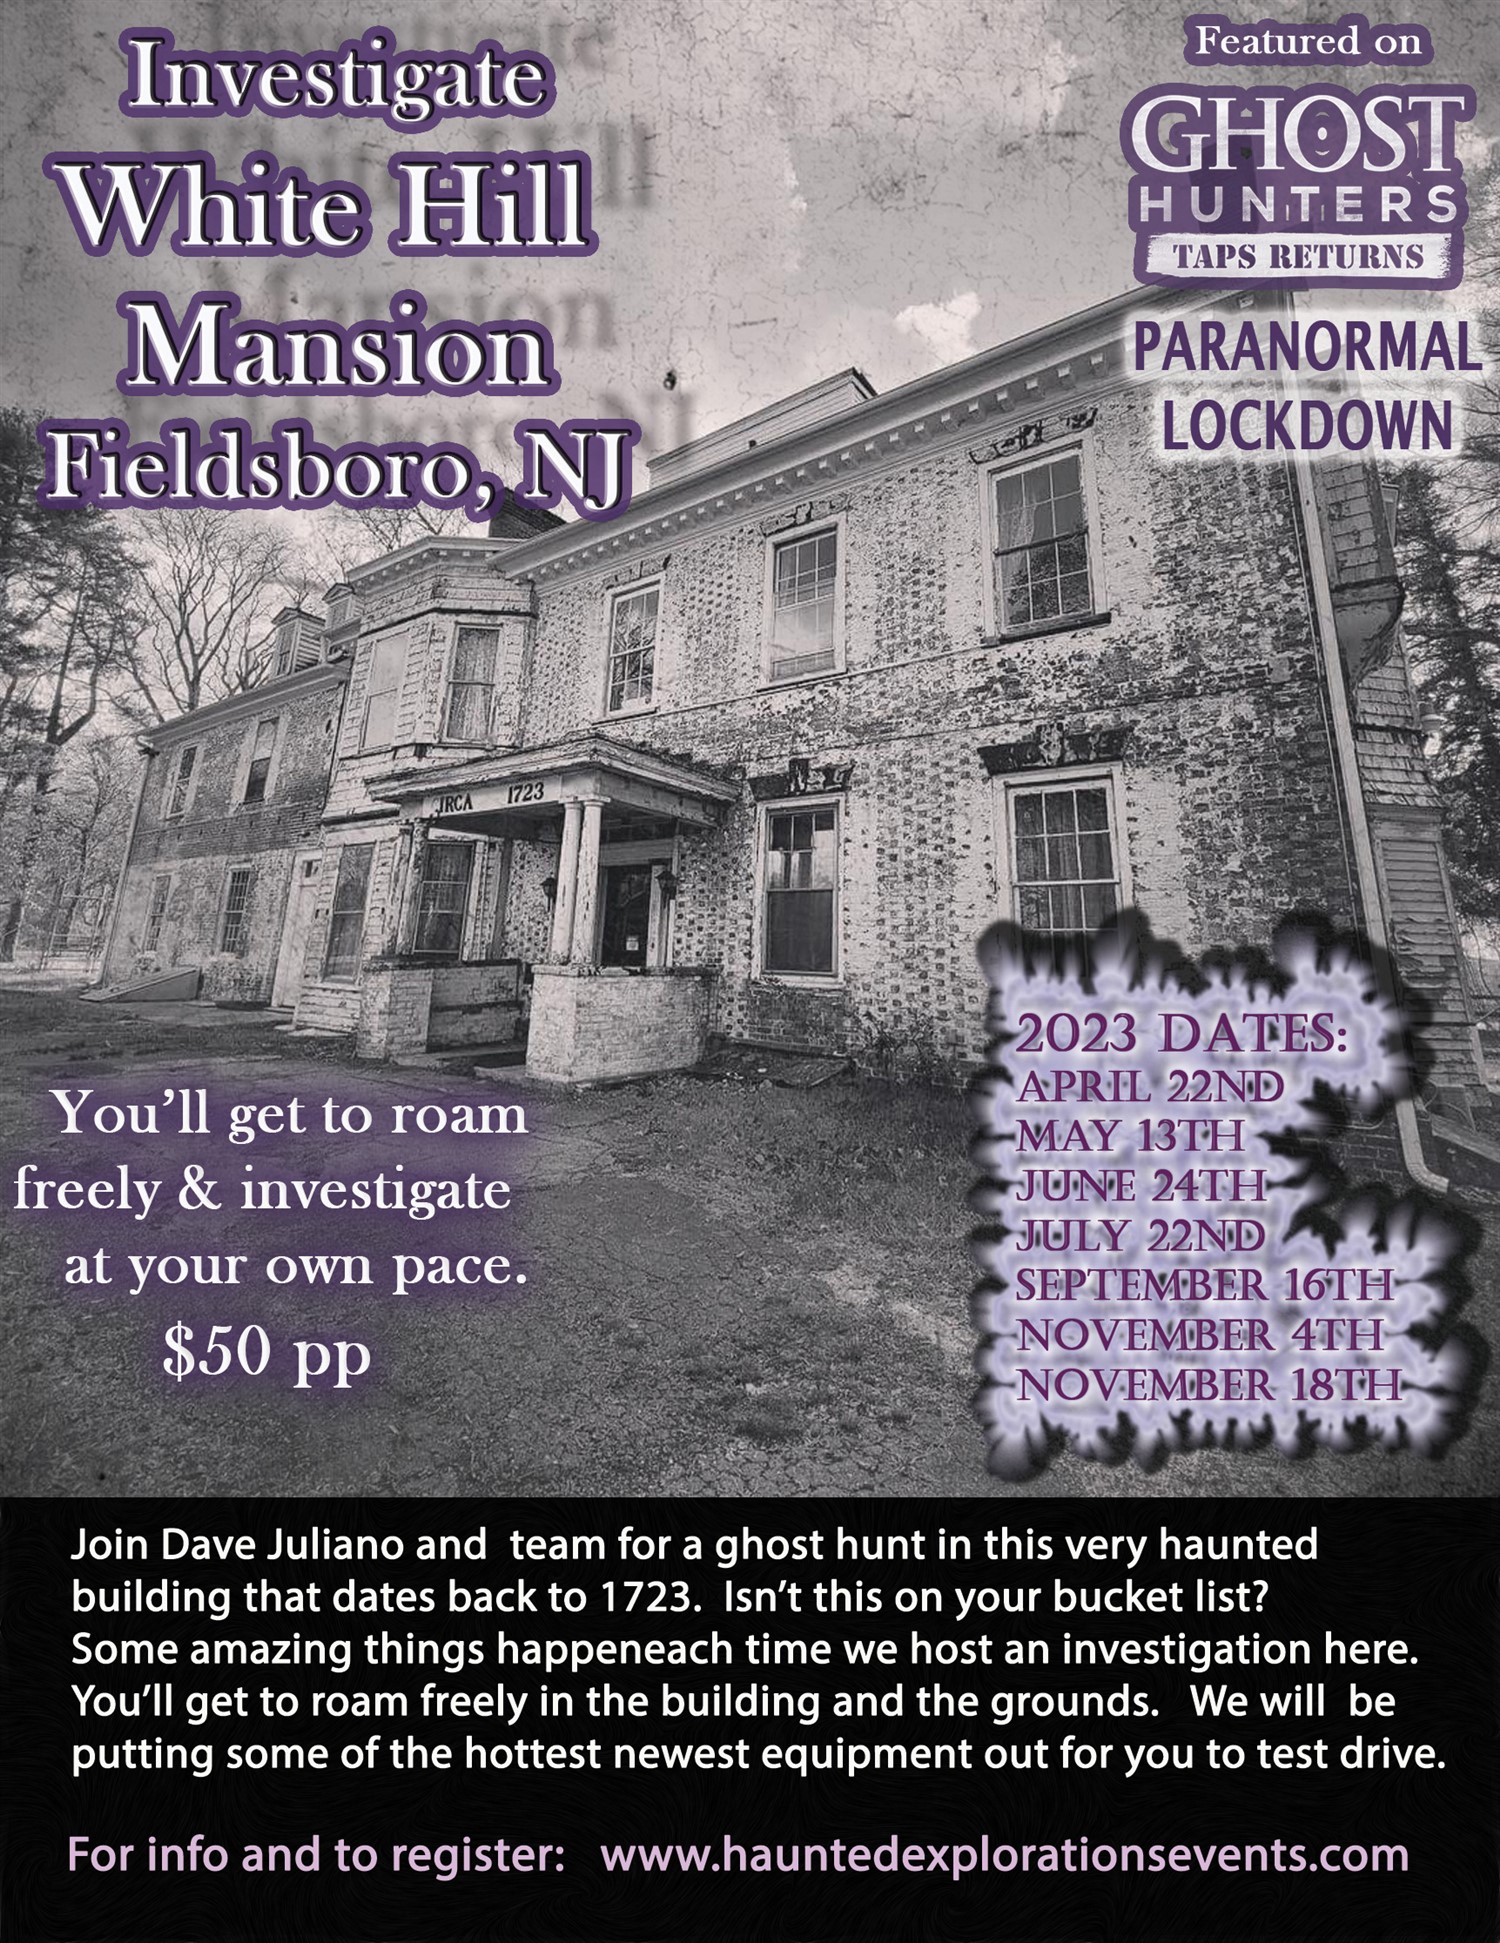 Investigate Whitehill Mansion  on juin 24, 20:00@White Hill Mansion - Achetez des billets et obtenez des informations surThriller Events thriller.events